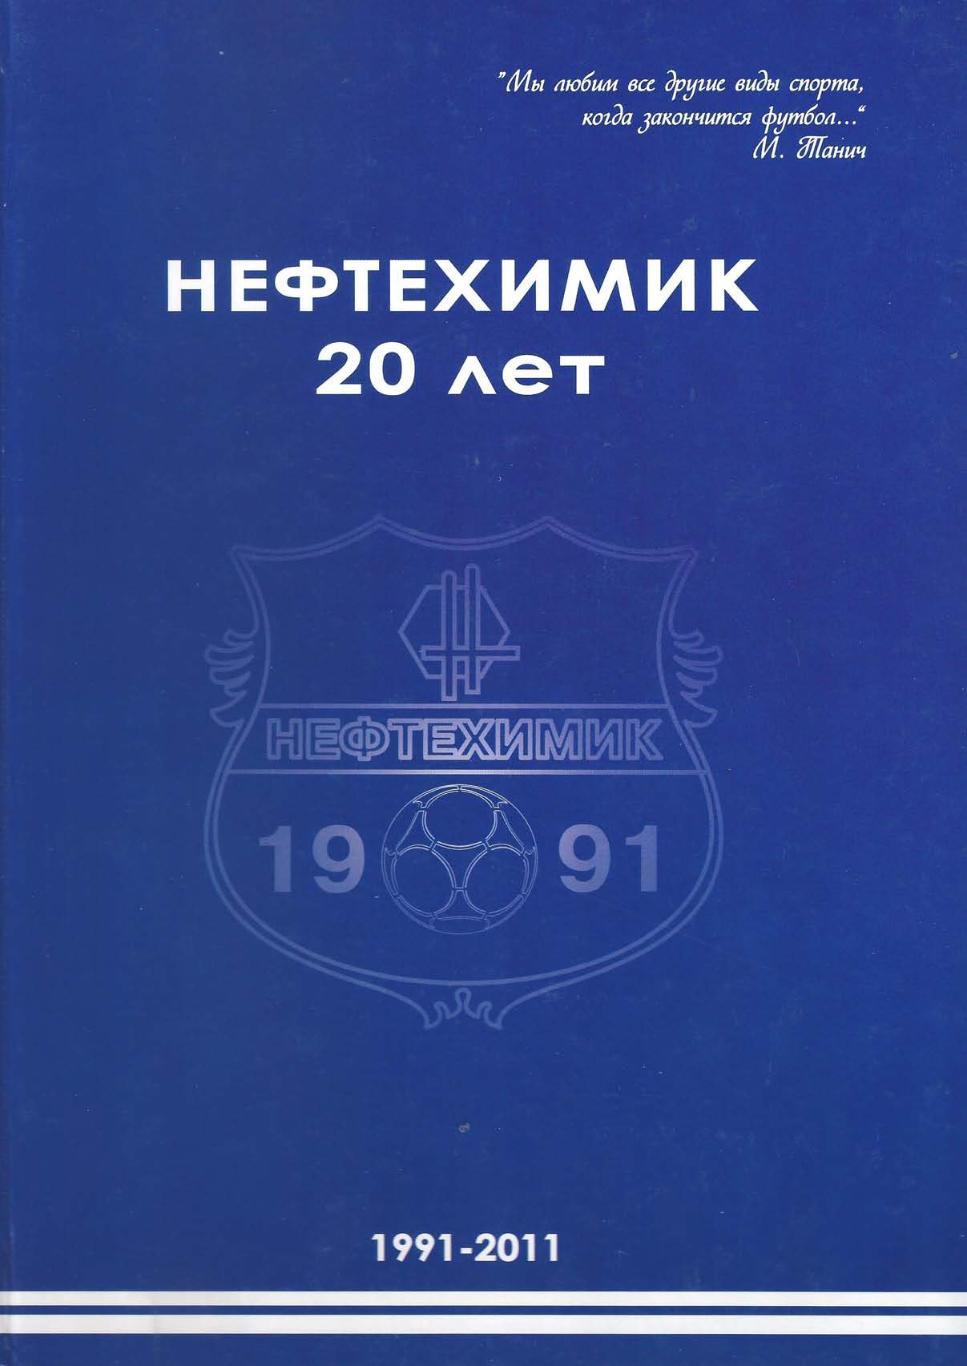 Нефтехимик (Нижнекамск) 20 лет (1991-2011)